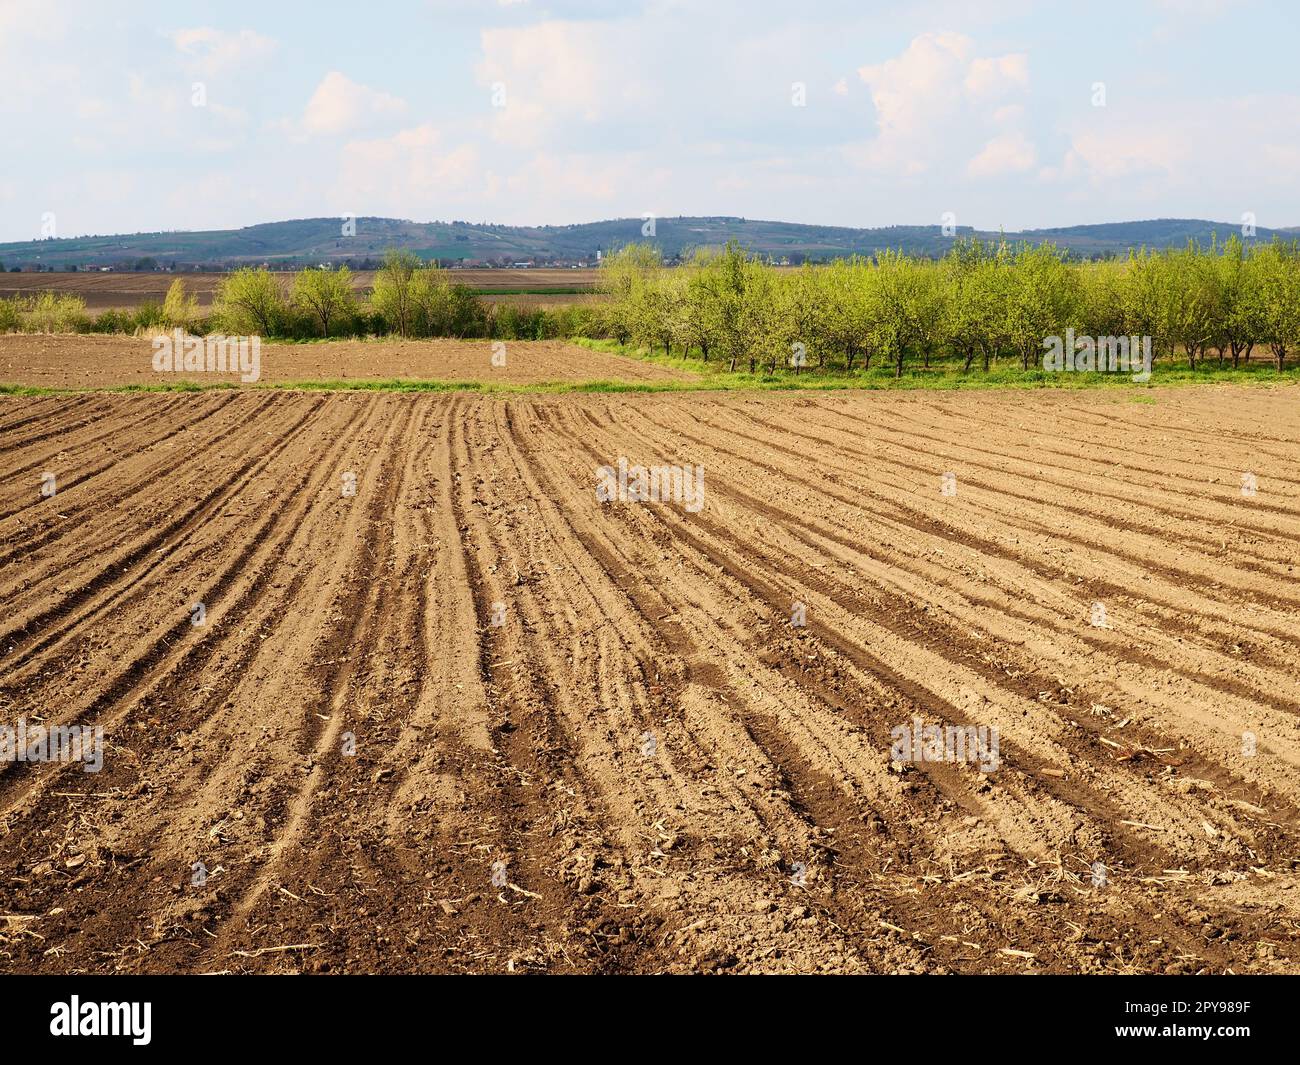 Landschaft mit landwirtschaftlich gepflügten Flächen, die für die Ernte vorbereitet sind. Landwirtschaftliche Landschaft, Ackerland für temporäre Kulturen, die gepflügt und für den Anbau von Kulturen genutzt werden können. Serbien Sremska Mitrovica, Fruska gora Stockfoto